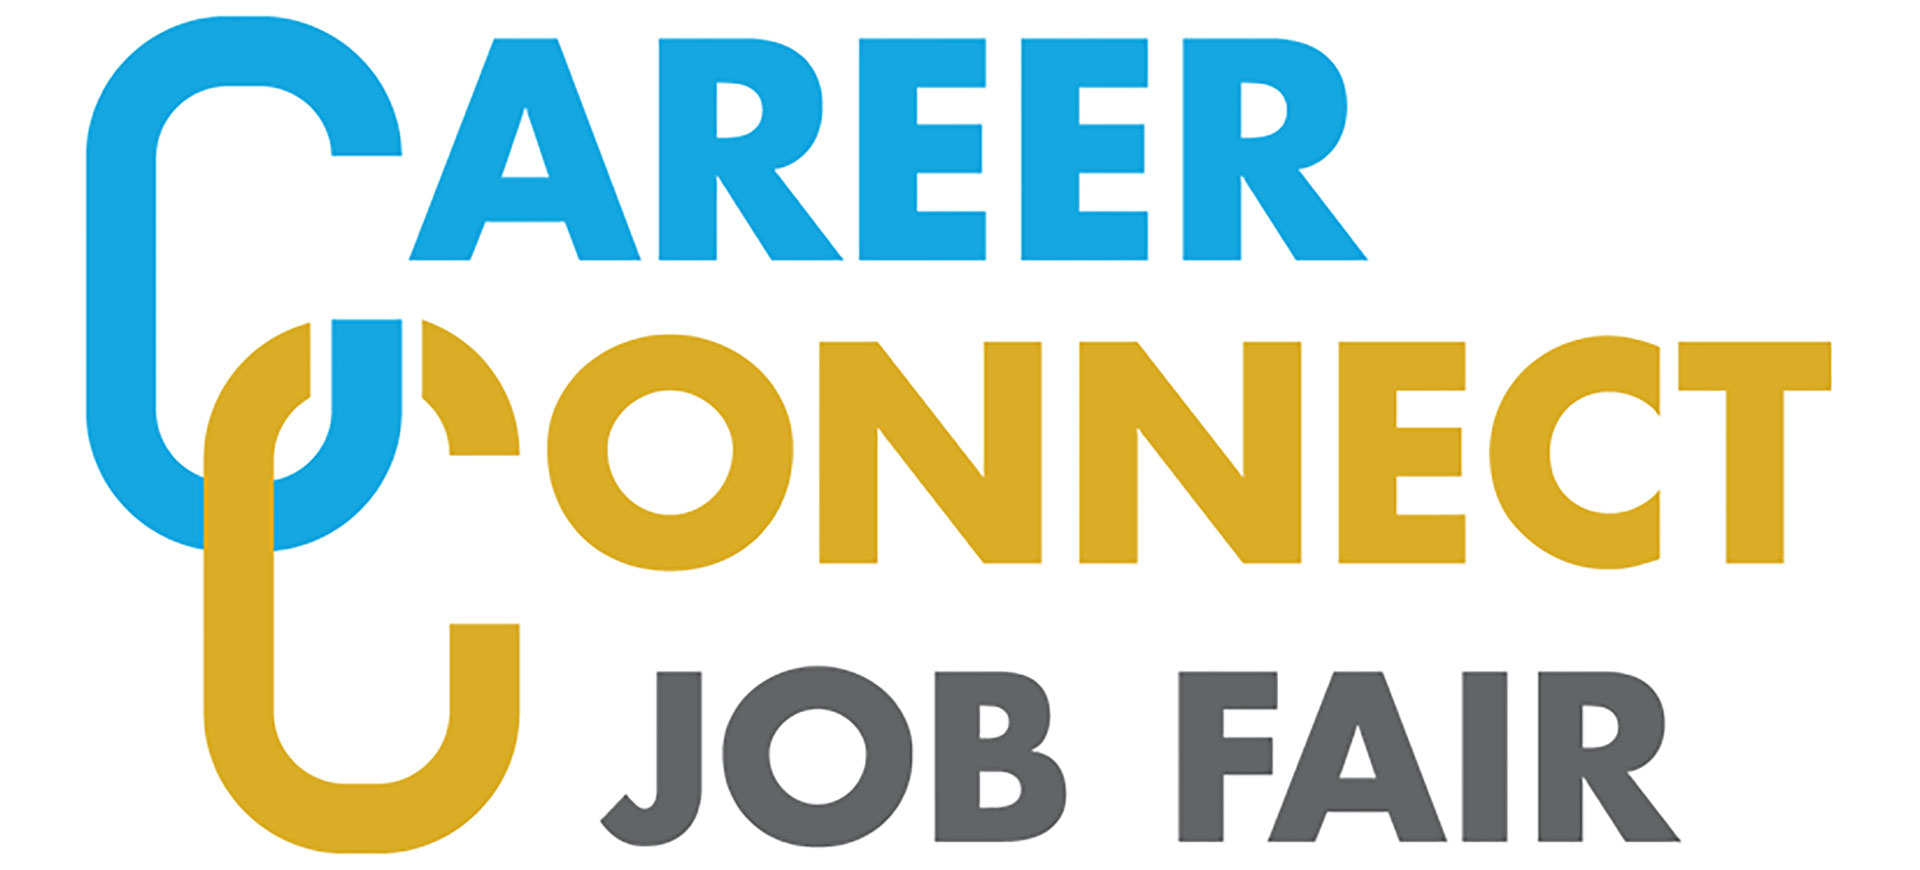 Career Connect Job Fair